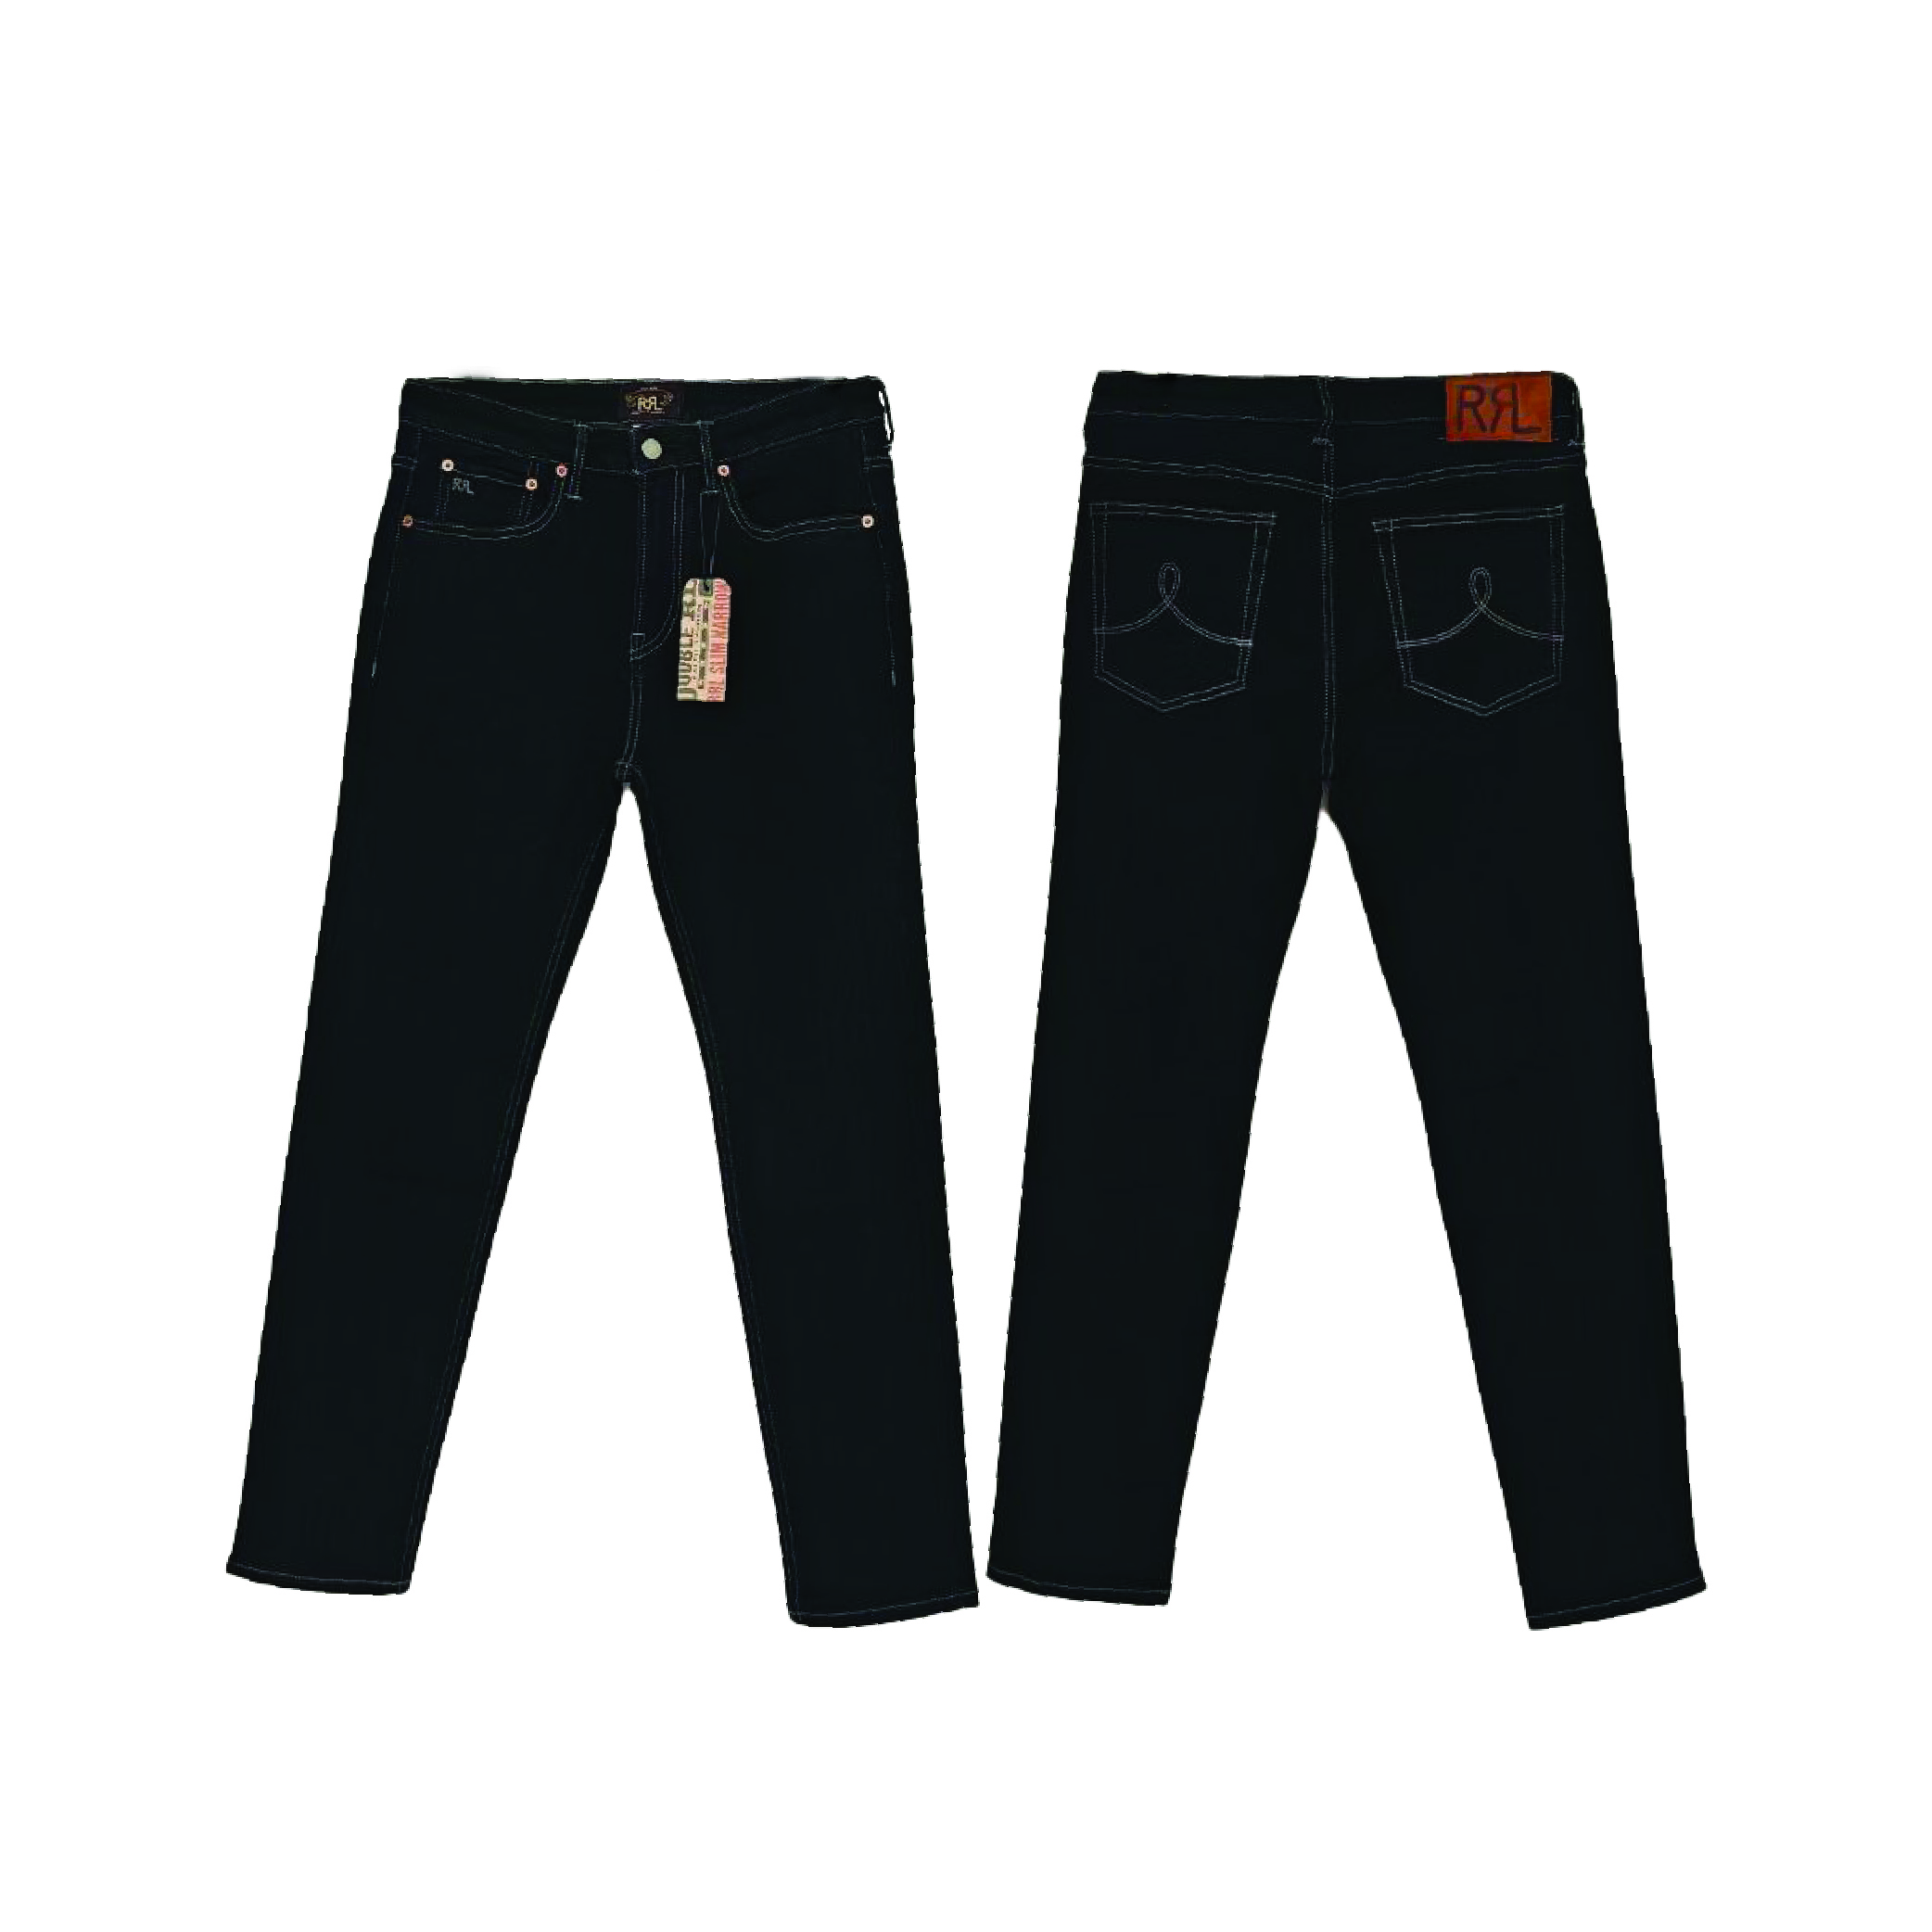 Raph Lauran Jeans2-01 (2)